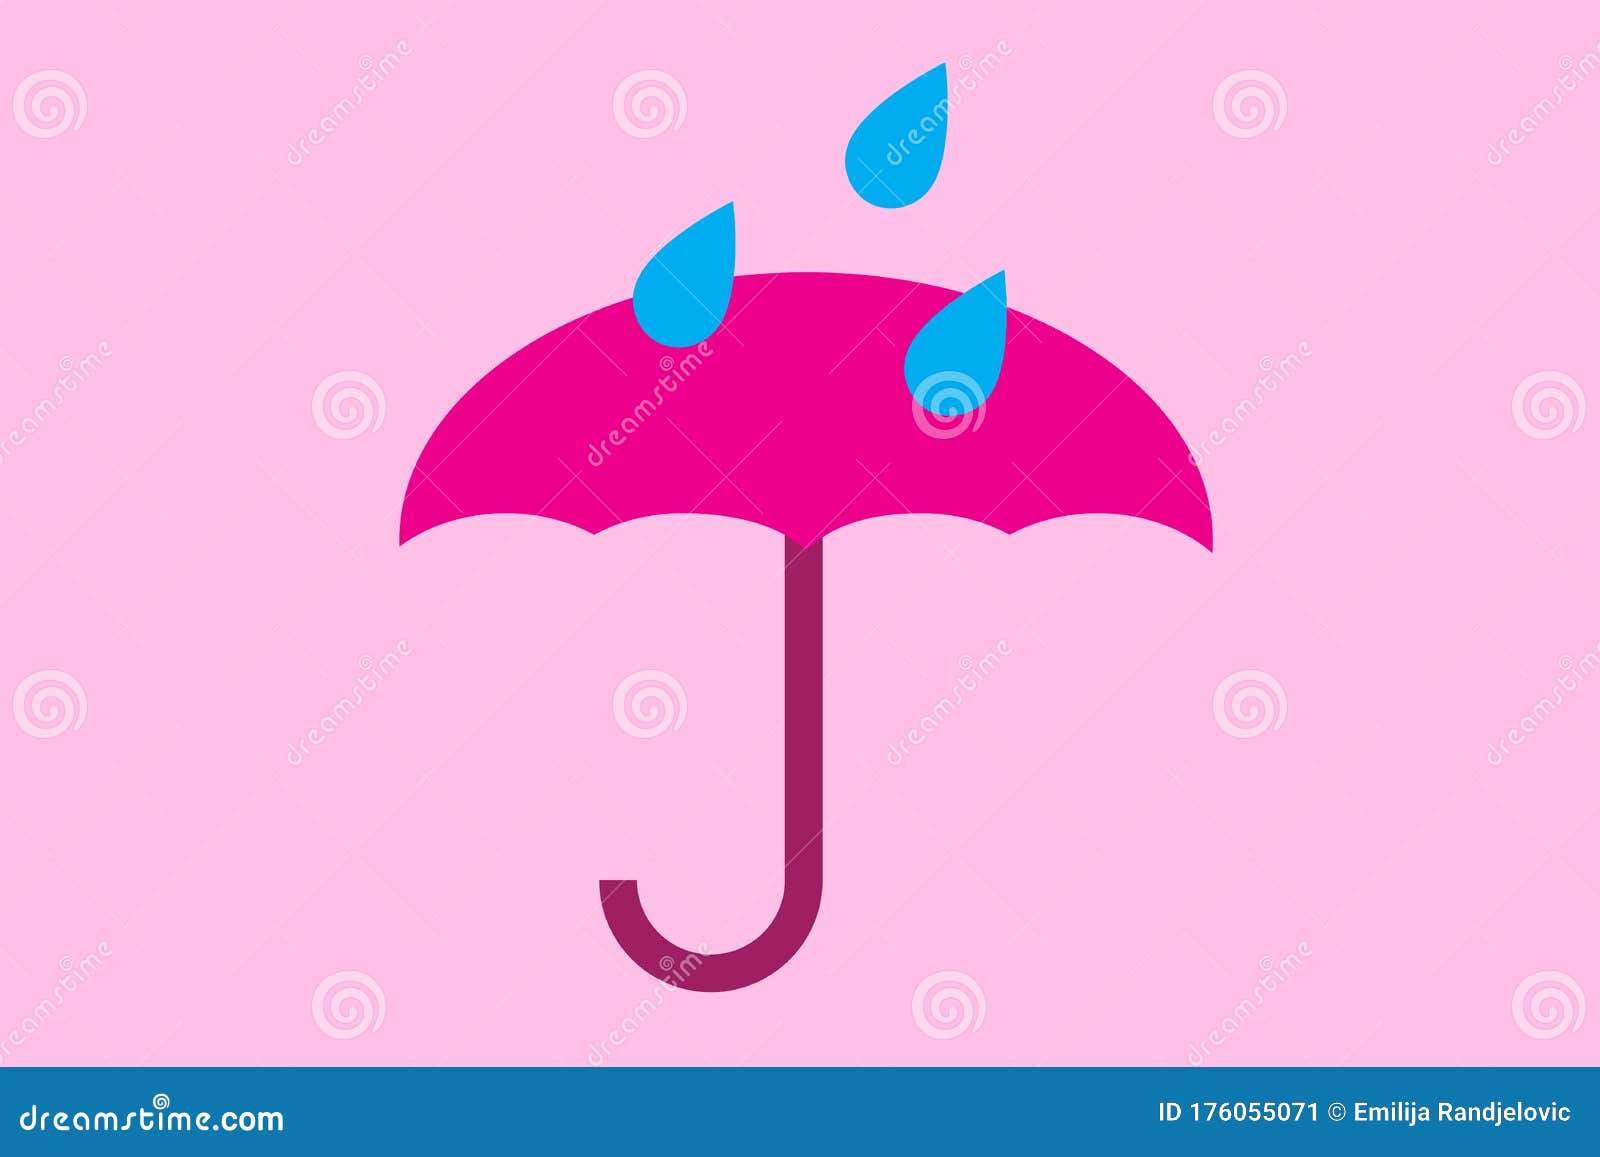 Cái nhìn này tuyệt vời đến mức bạn có thể cảm nhận được những giọt mưa rơi trên mũ che nắng màu hồng. Với nền đẹp và tươi sáng này, chiếc ô dù sẽ trở thành điểm nhấn tuyệt vời cho bức ảnh của bạn. Hãy lướt qua bức ảnh để tận hưởng sự tinh tế trong việc khai thác màu sắc.